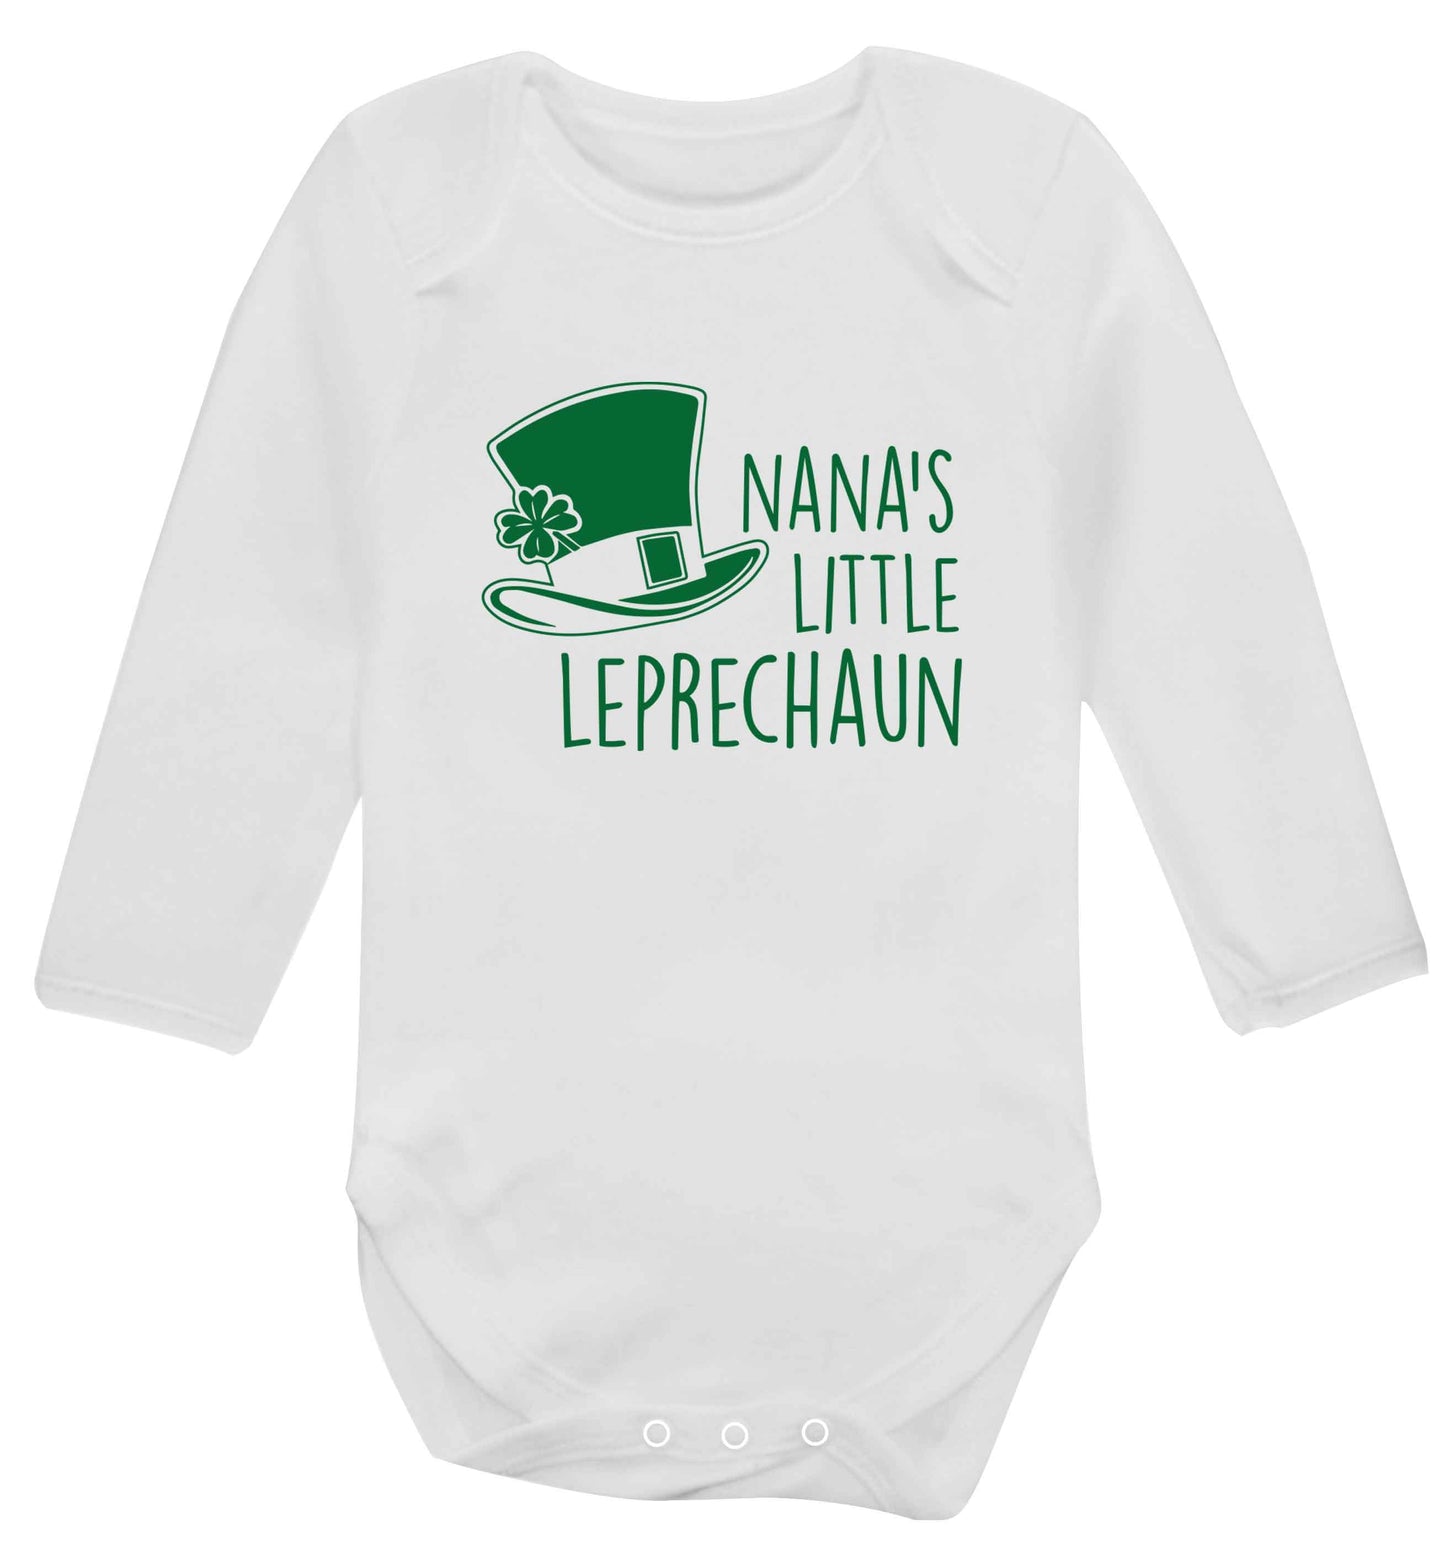 Nana's little leprechaun baby vest long sleeved white 6-12 months